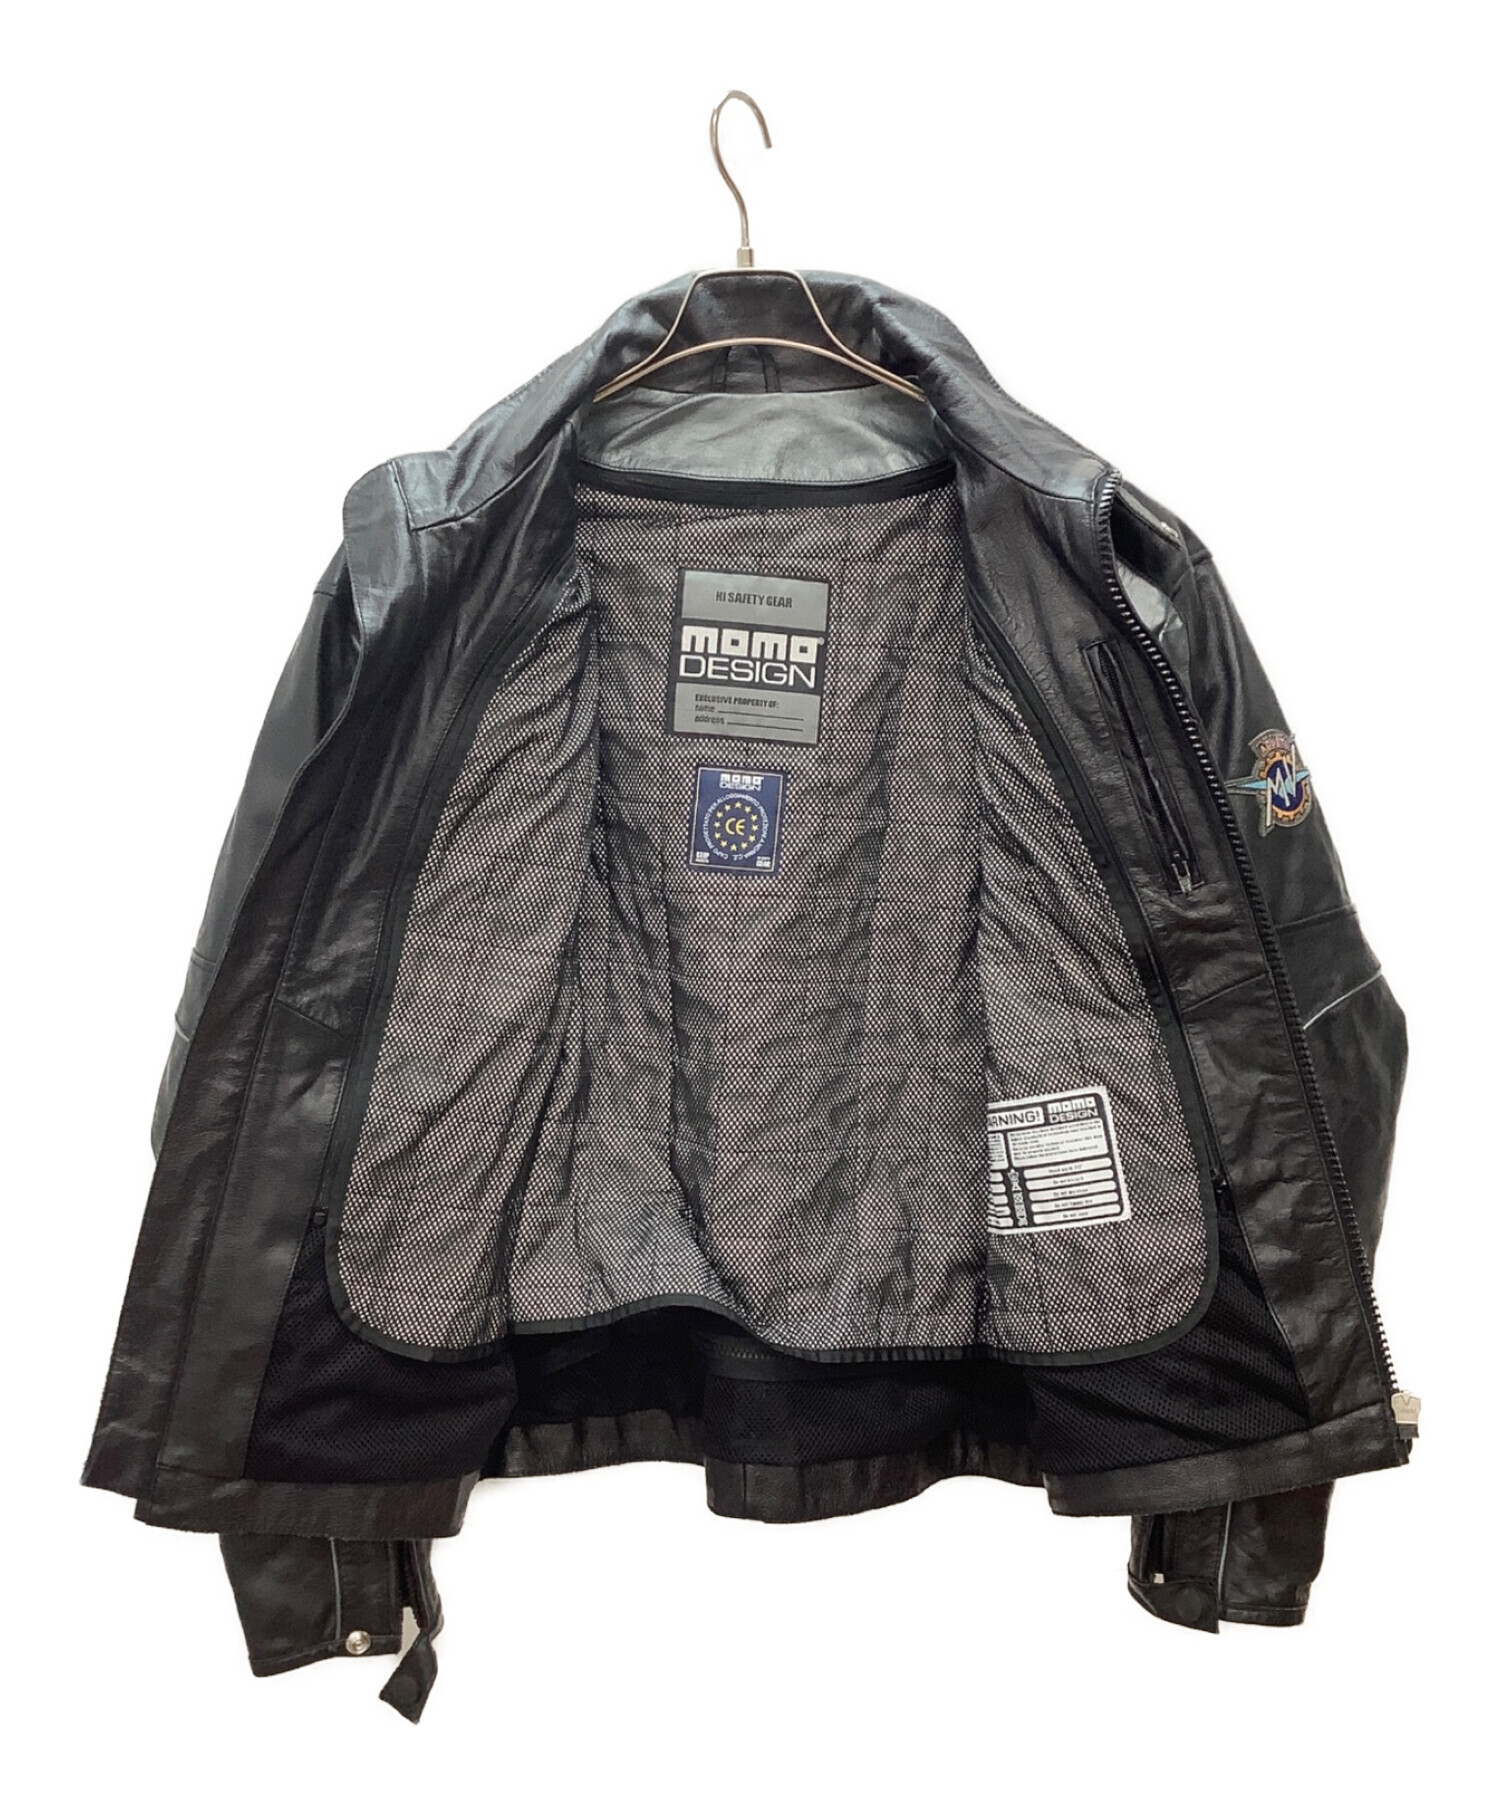 MOMO DESIGN (モモデザイン) ライダースジャケット ブラック サイズ:52